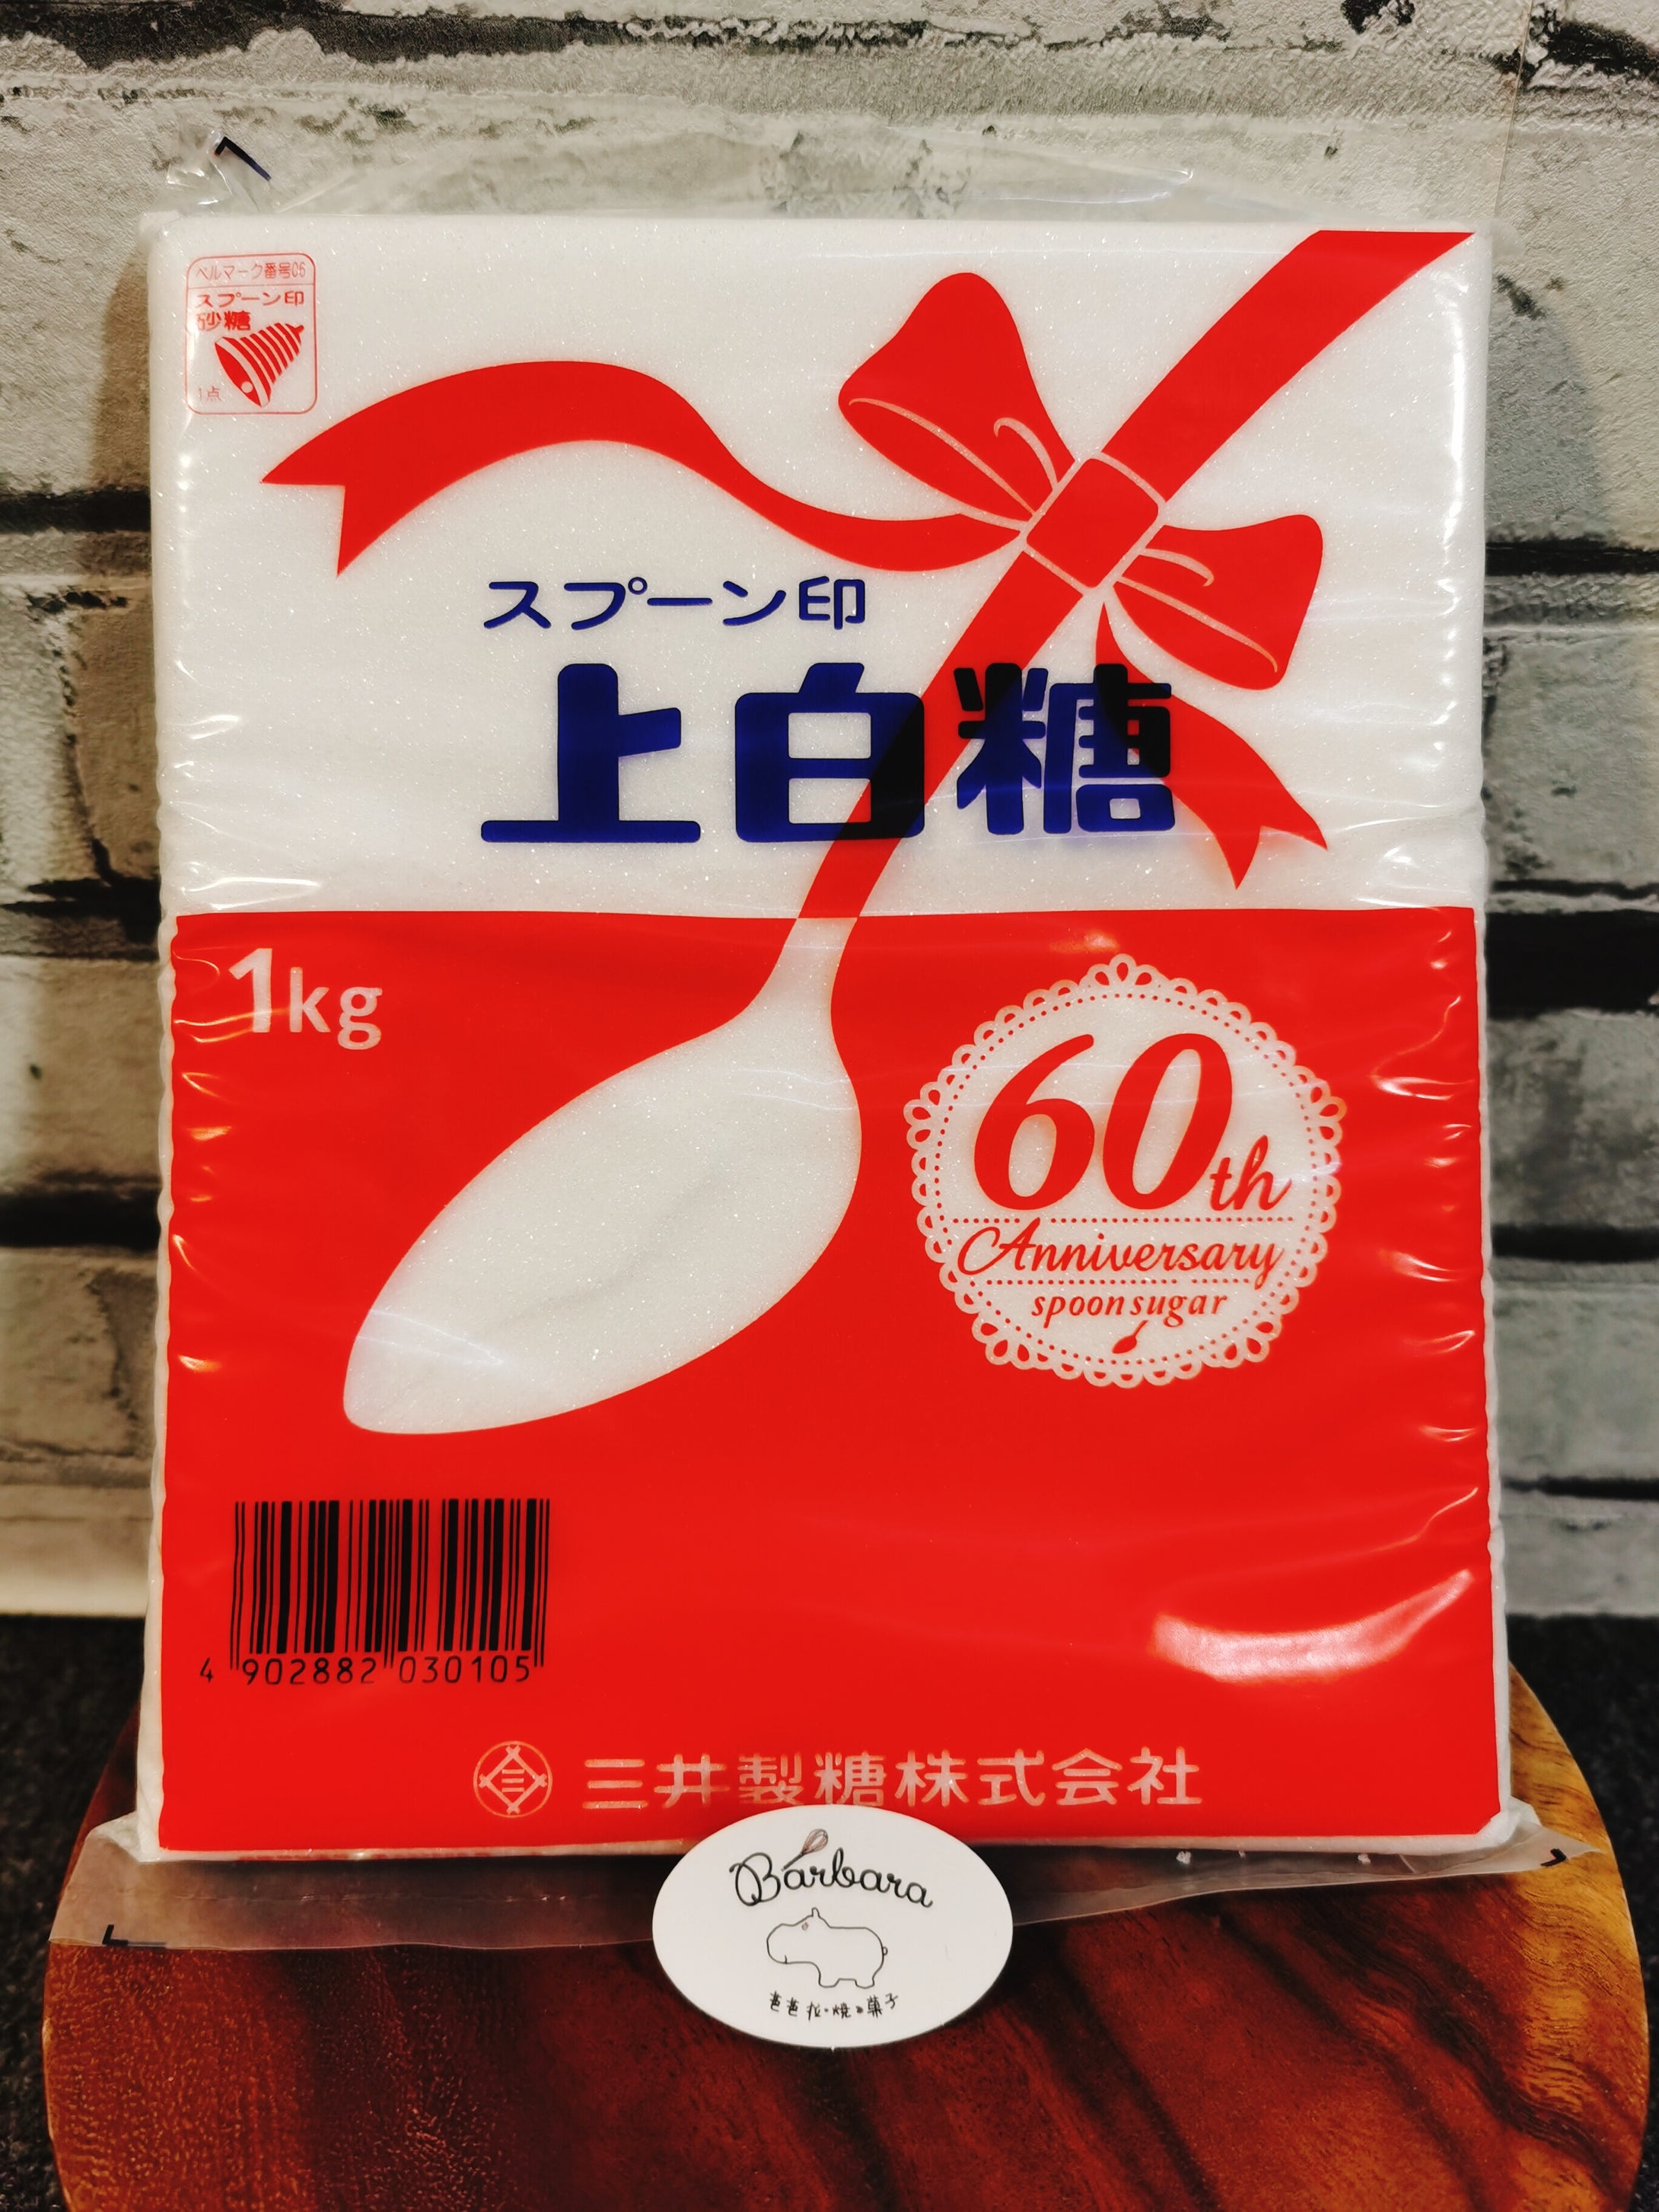 Uehakuto 上白糖 1kg (じょうはくとう)